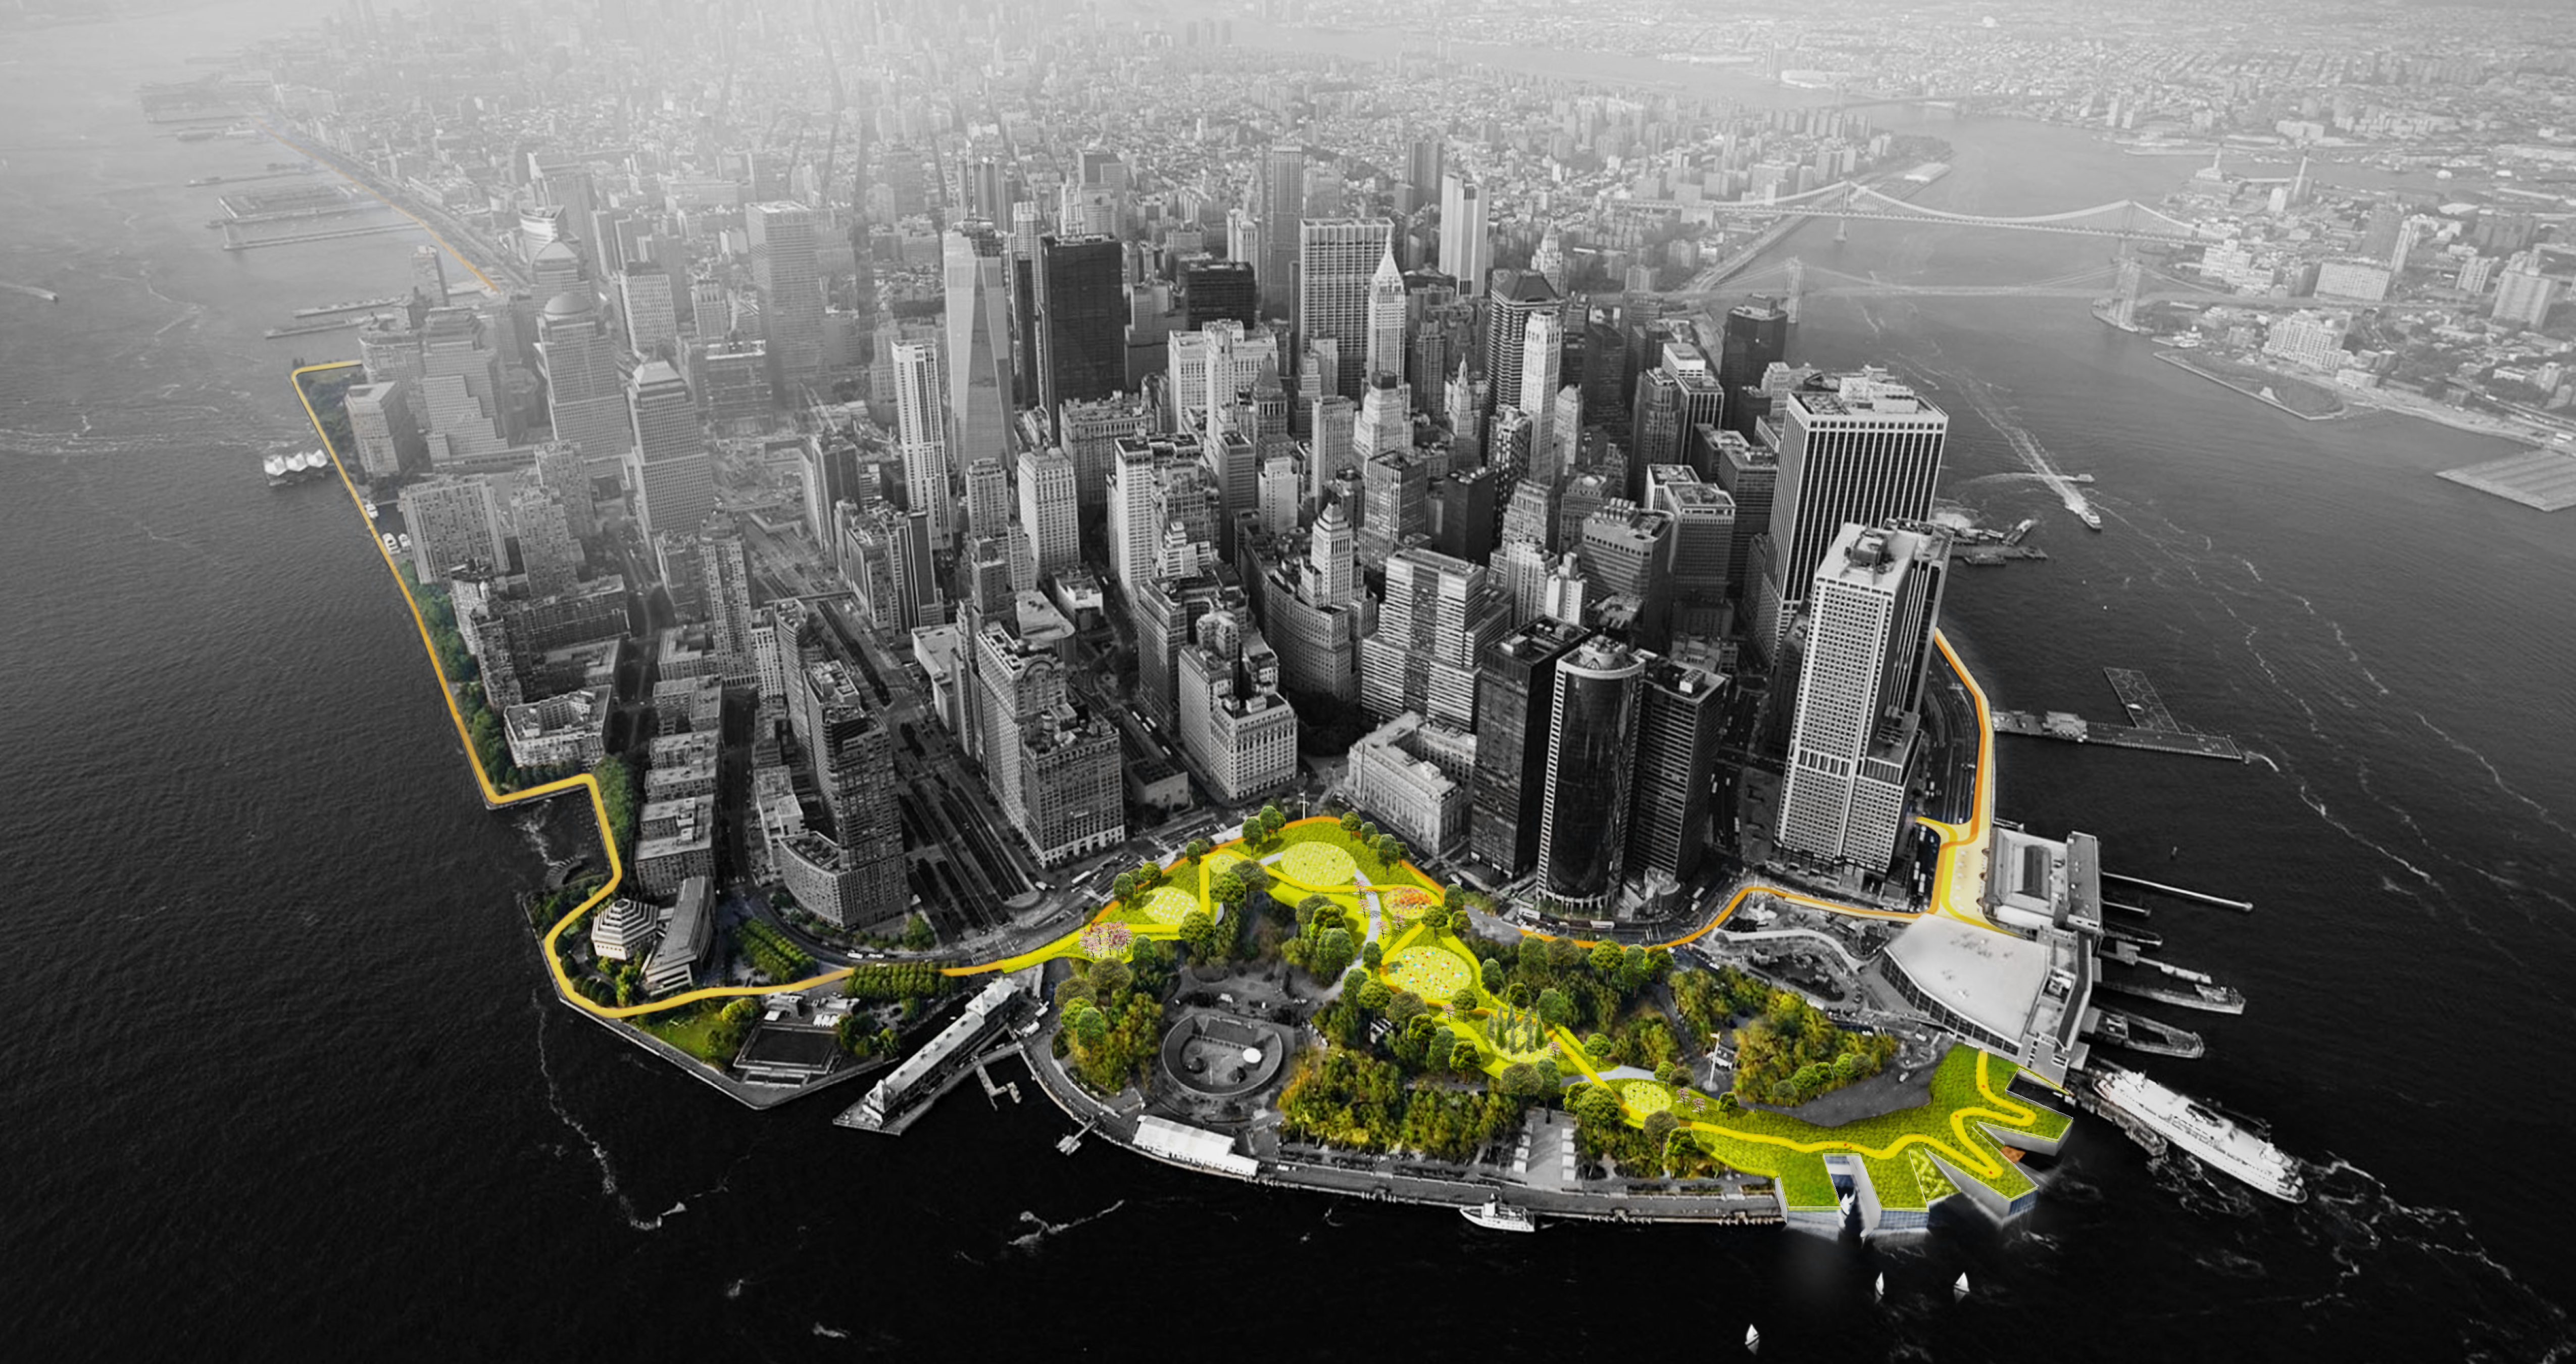 Vista aérea da parte baixa de Manhattan. Os espaços verdes são coloridos em verde e amarelo, enquanto o restante da imagem é preto e branco